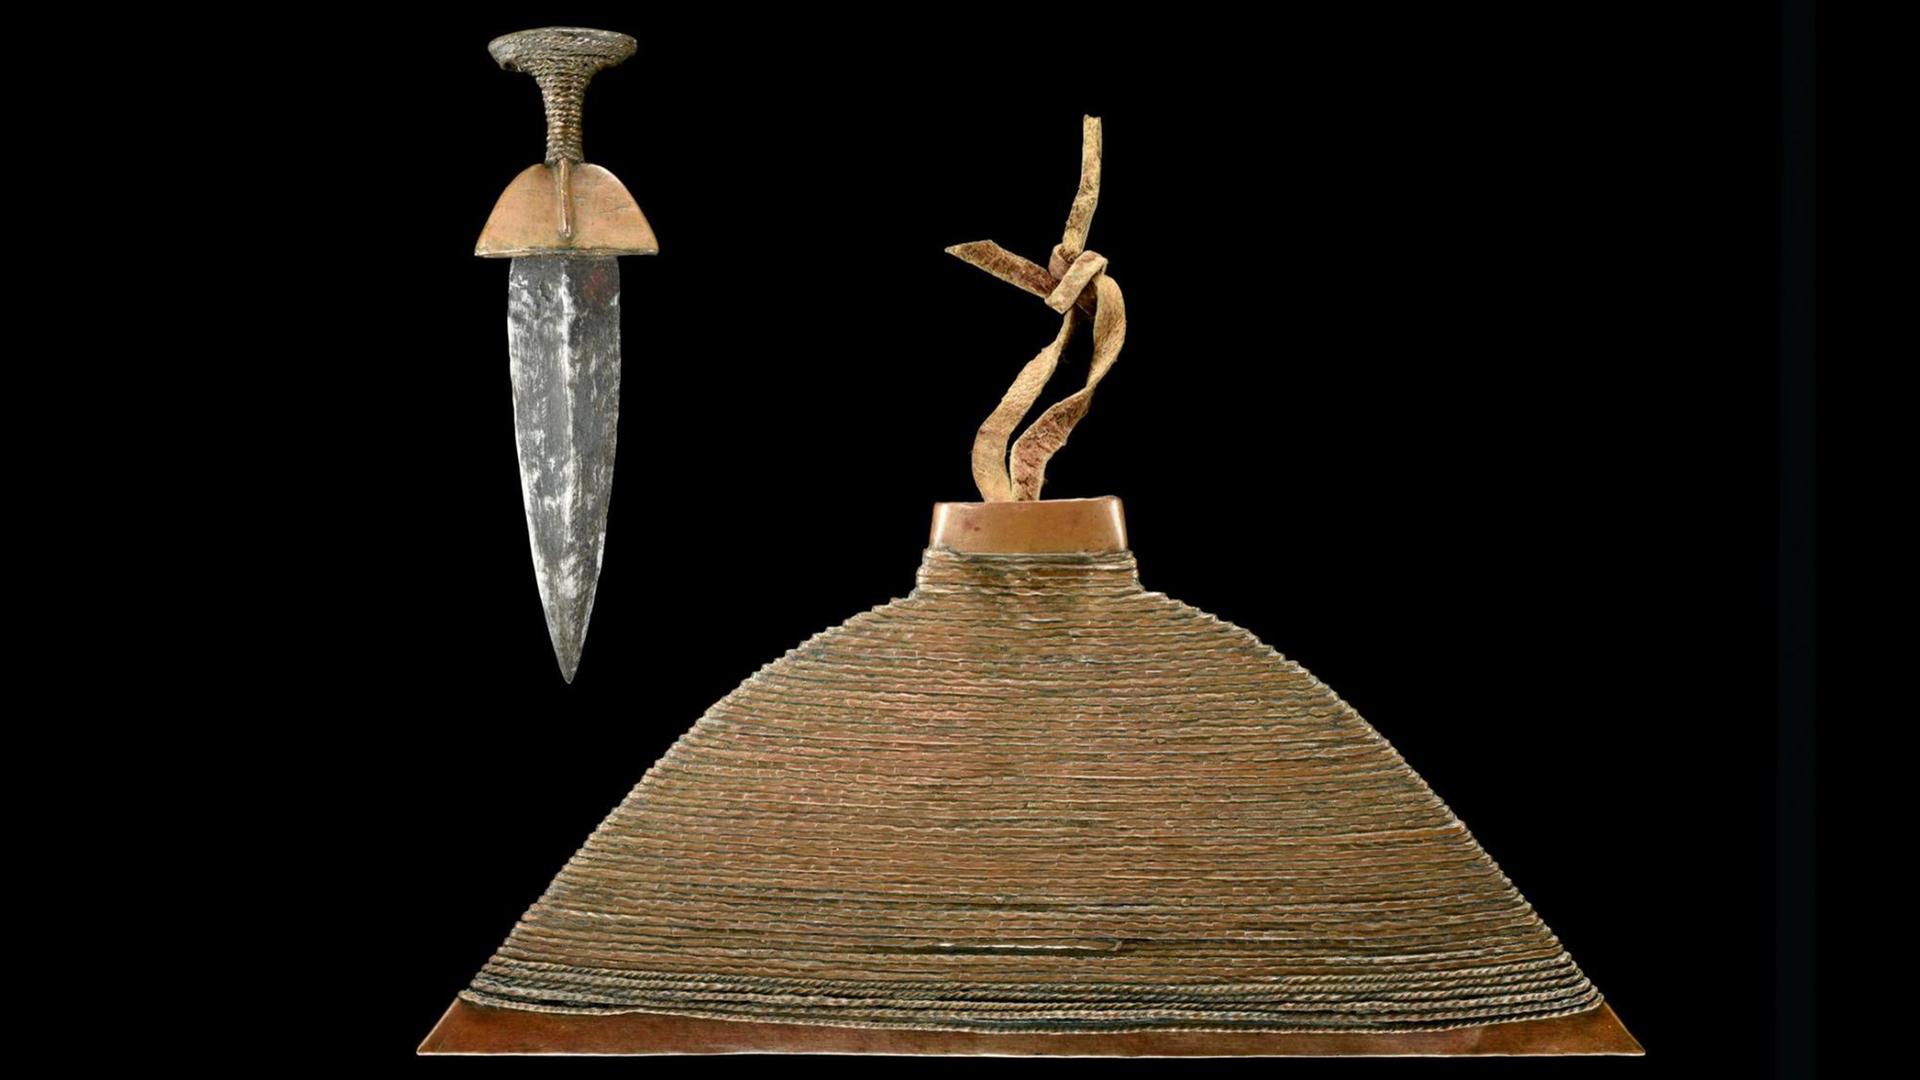 Dolch mit reich verzierter Messingscheide (Onkonda), gefertigt von einer Ondonga Künstler*in, dessen Name nicht dokumentiert wurde, ca. 1900, Ankauf: Hermann Tönjes, 1909, Inventarnummer: 3647a,b